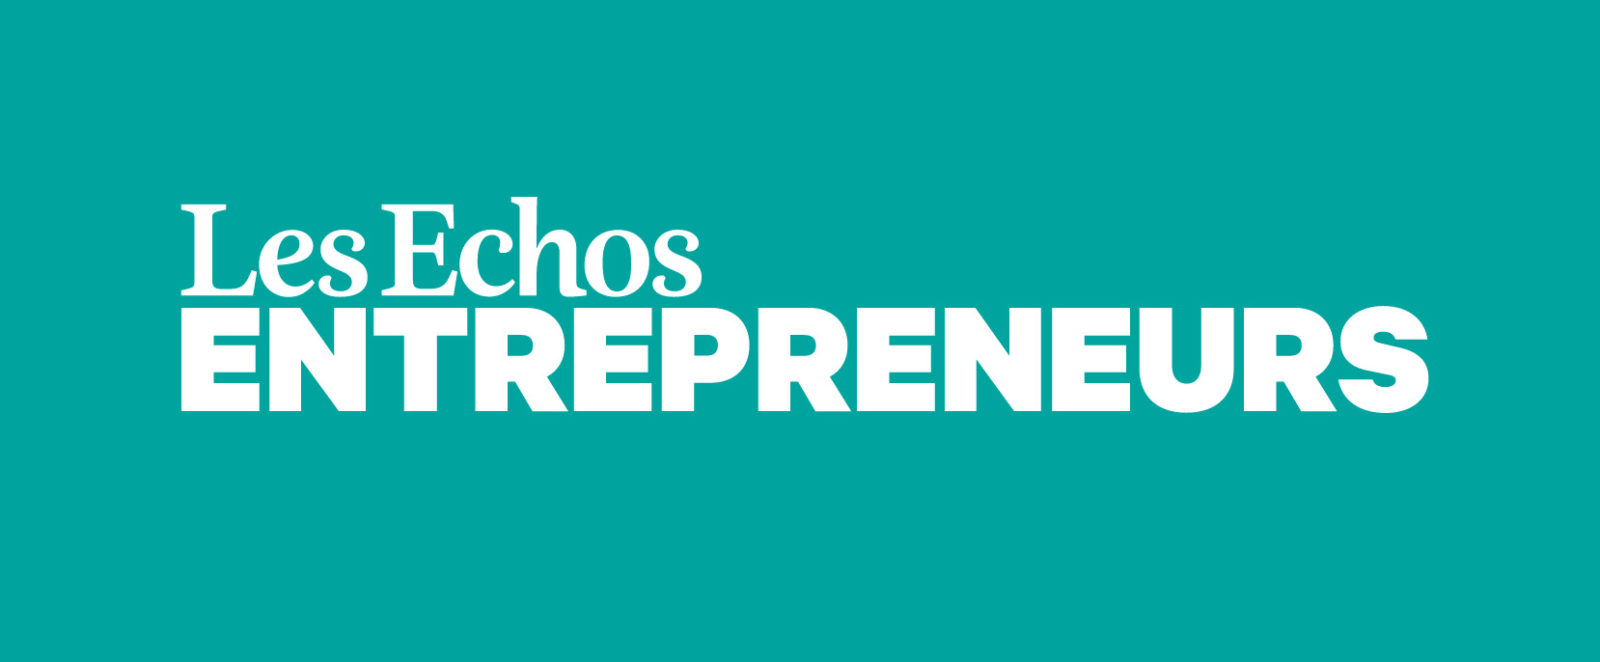 Article de presse sur Les Echos Entrepreneurs